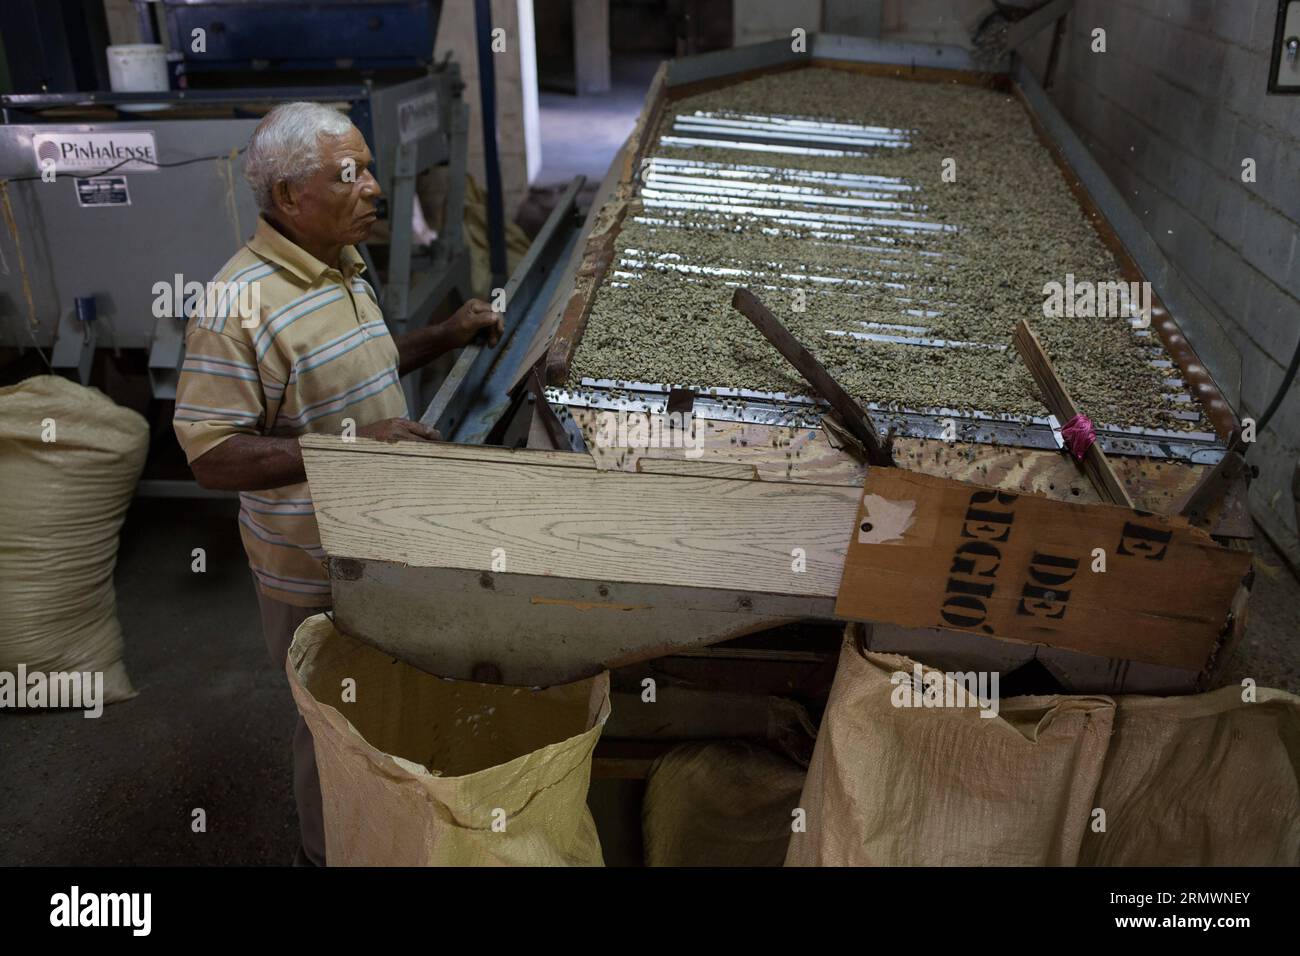 (141106) -- SAN CRISTOBAL, -- immagine scattata il 28 ottobre 2014 mostra un operaio che seleziona i chicchi di caffè in base al peso e alle dimensioni in un magazzino gestito dalla la Esperanza Association of Coffee Growers (ASOCAES, per il suo acronimo in spagnolo) del comune di Los Cacaos, a San Cristobal, Repubblica Dominicana. La vita del 10% della popolazione dominicana ruota intorno alla produzione di caffè. Fran Afonso) REPUBBLICA DOMINICANA-SAN CRISTOBAL-AGRICULTURE-COFFEE e FRANxAFONSO PUBLICATIONxNOTxINxCHN San Cristobal immagine scattata NELL'ottobre 28 2014 mostra un lavoratore diurno che seleziona i chicchi di caffè in base al peso e alle dimensioni Foto Stock